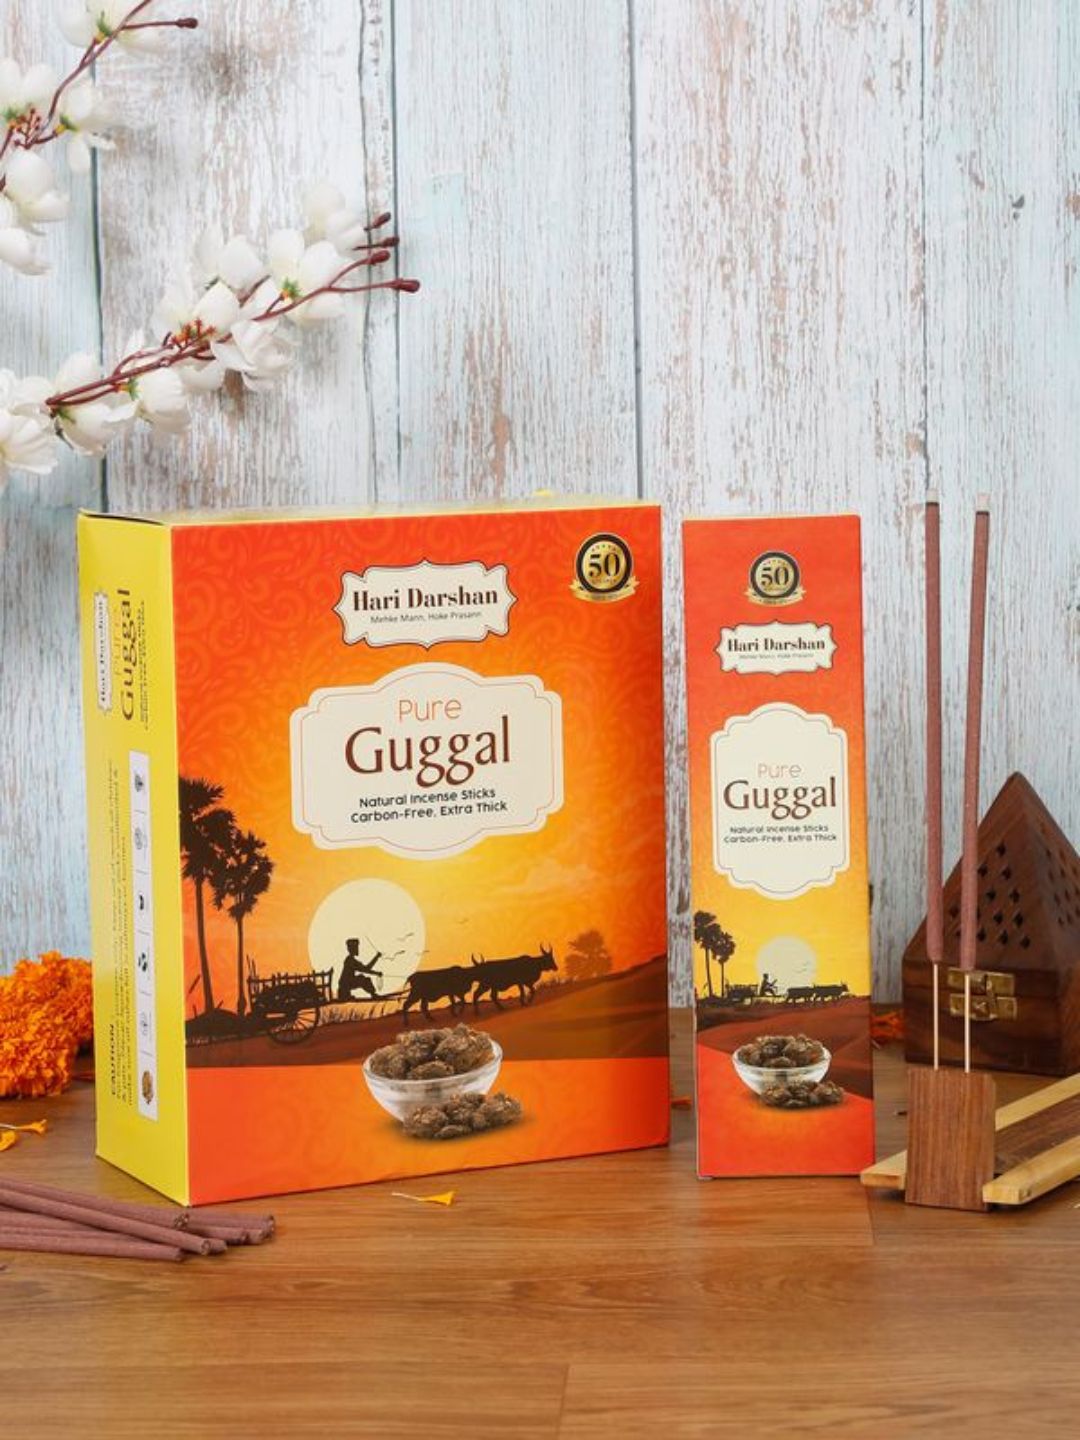 Hari Darshan Pure Gugal Natural Incense Sticks Carbon Free Agarbatti -60g